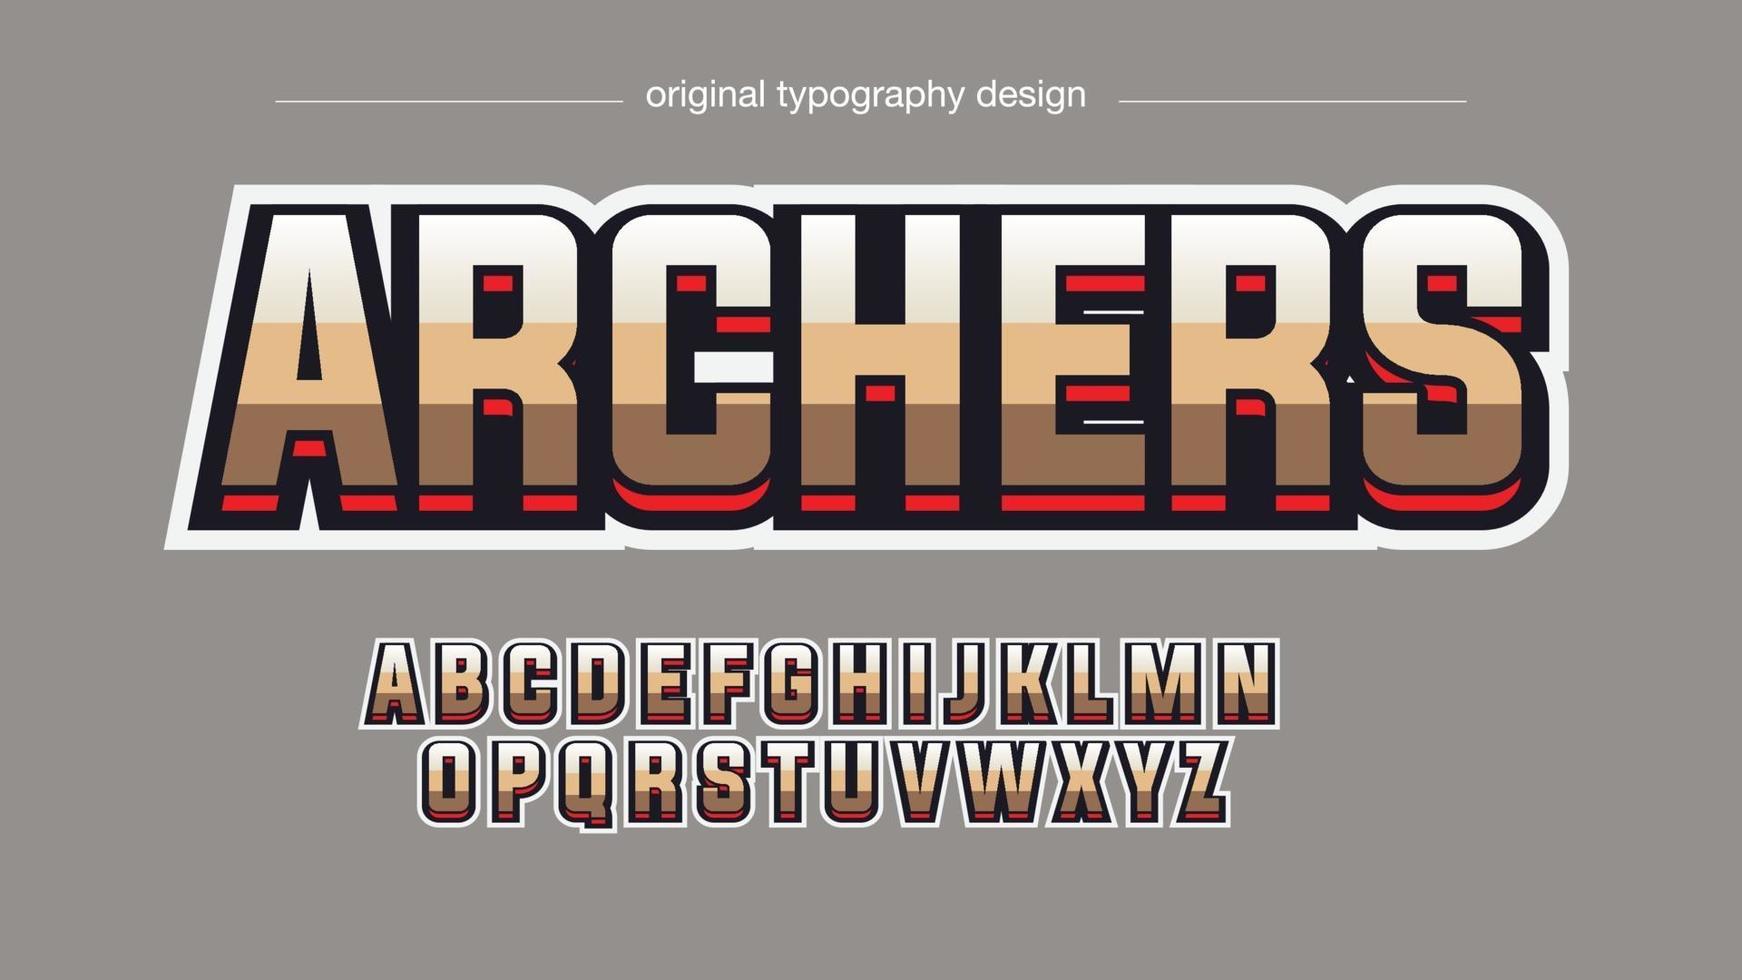 goldene Streifen moderner Sportteam-Typografie-Stil vektor